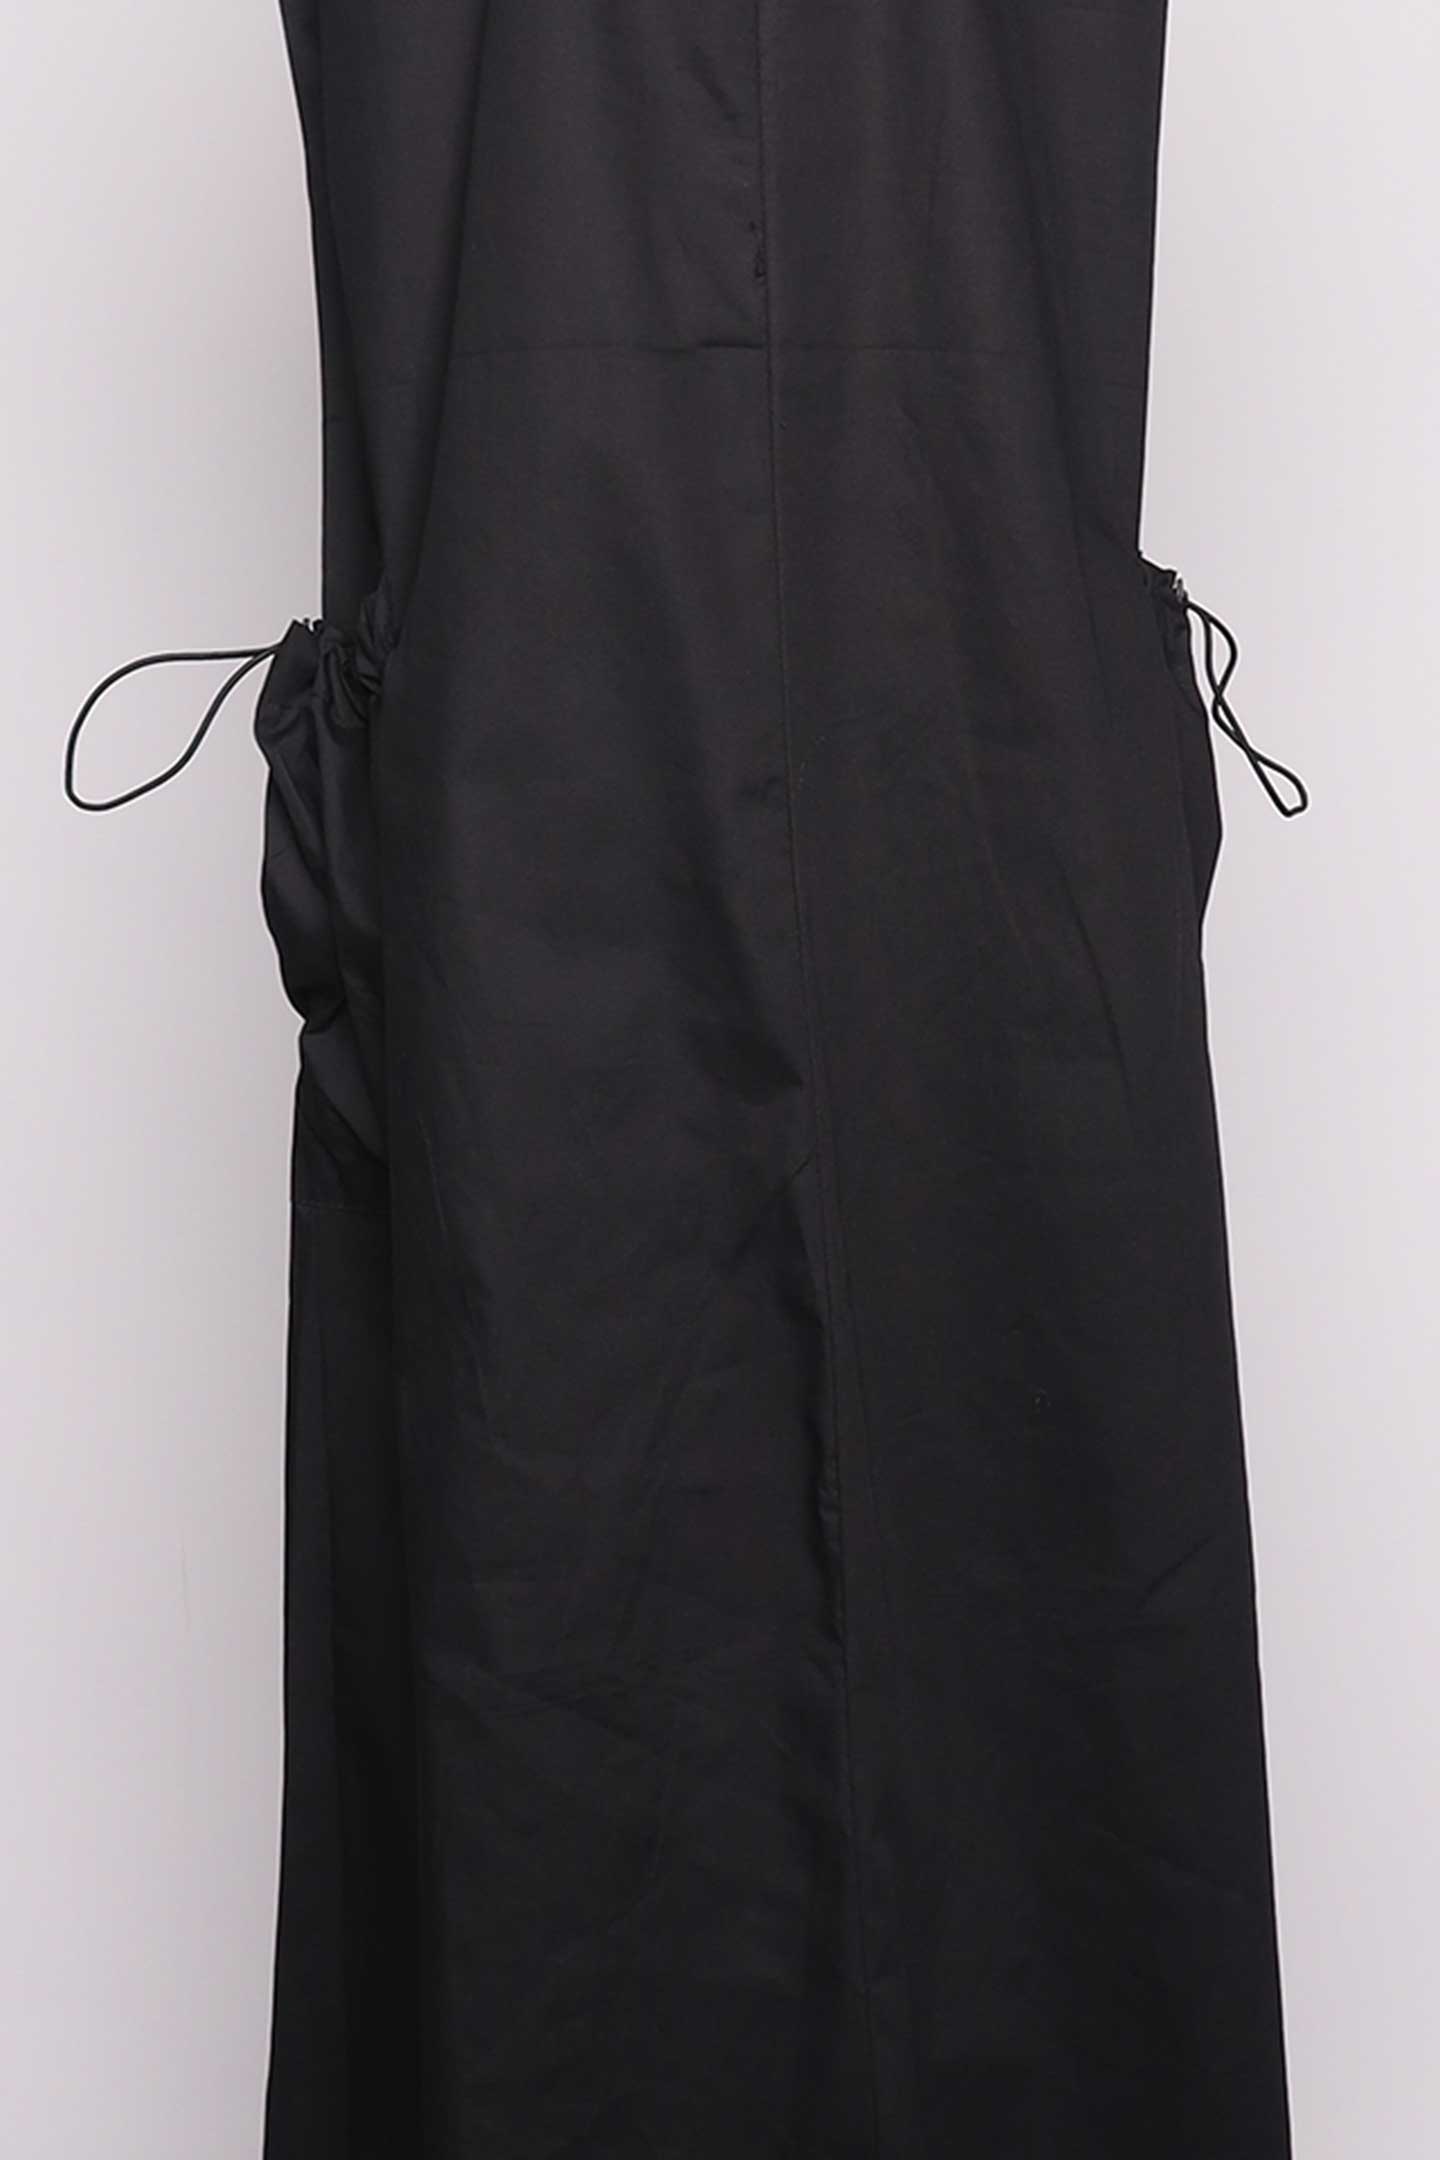 PO - Camille Dress in Black